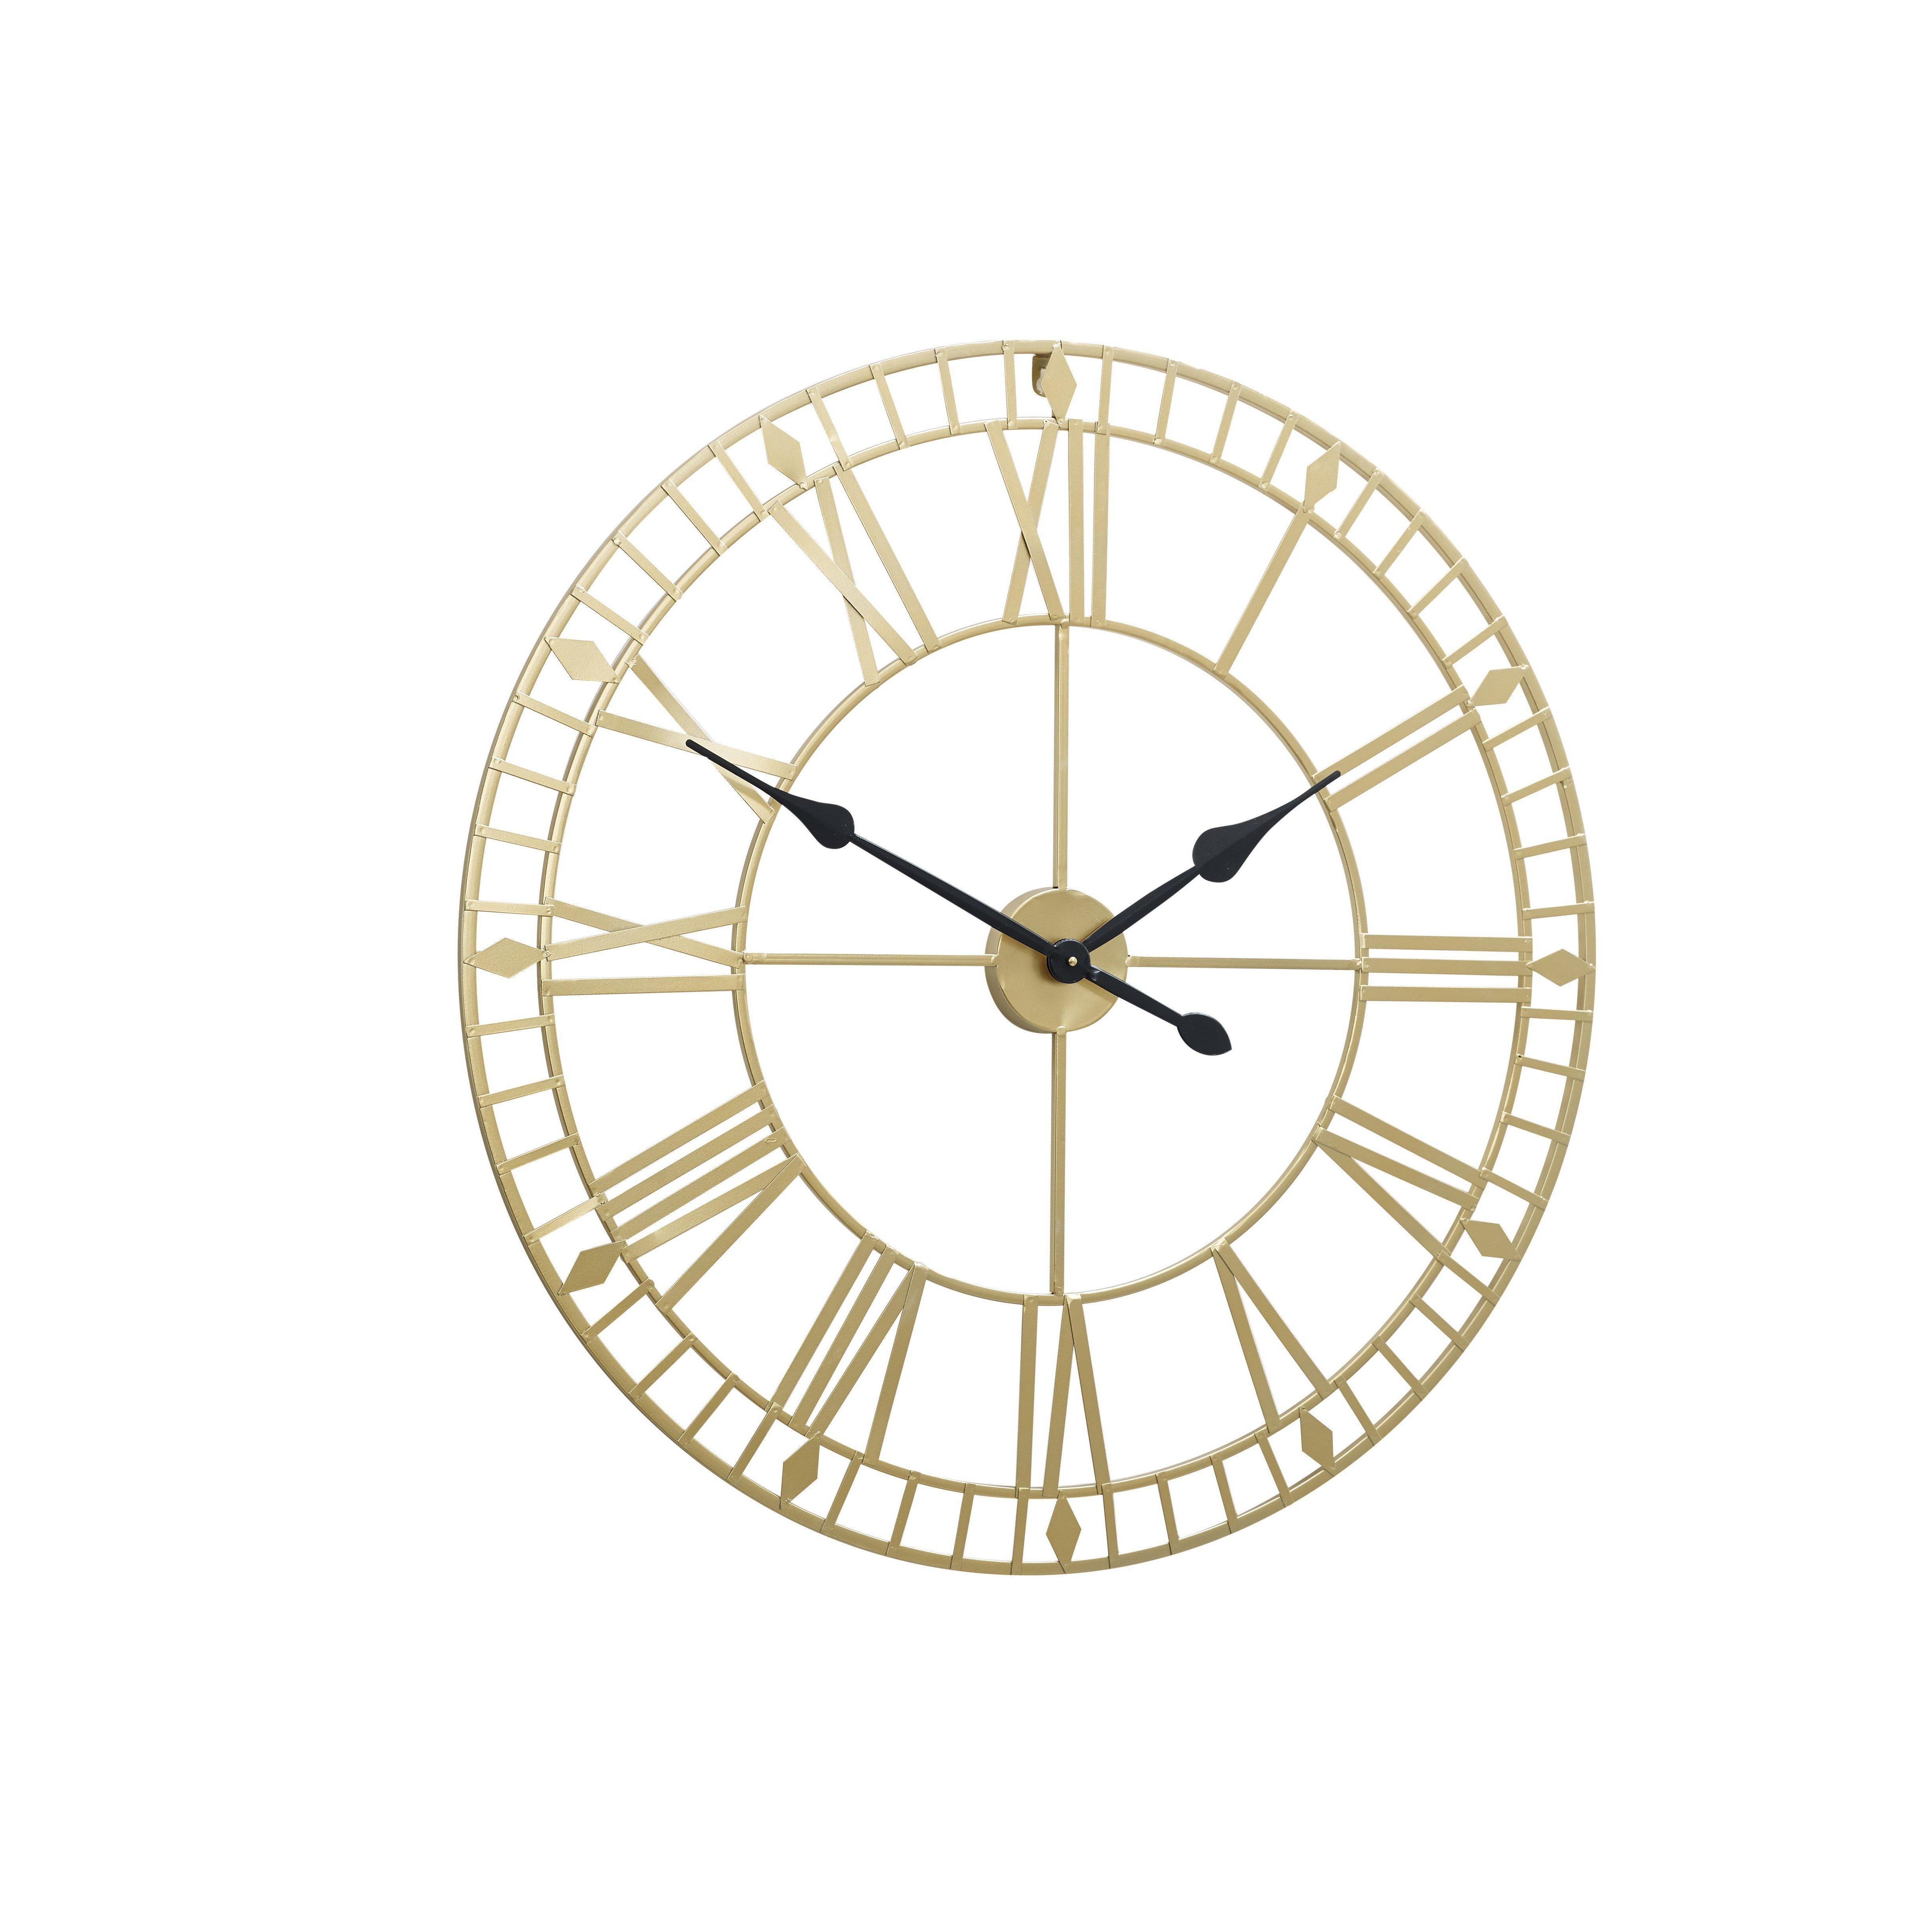 Large Gold Skeleton Wall Clock - image 1